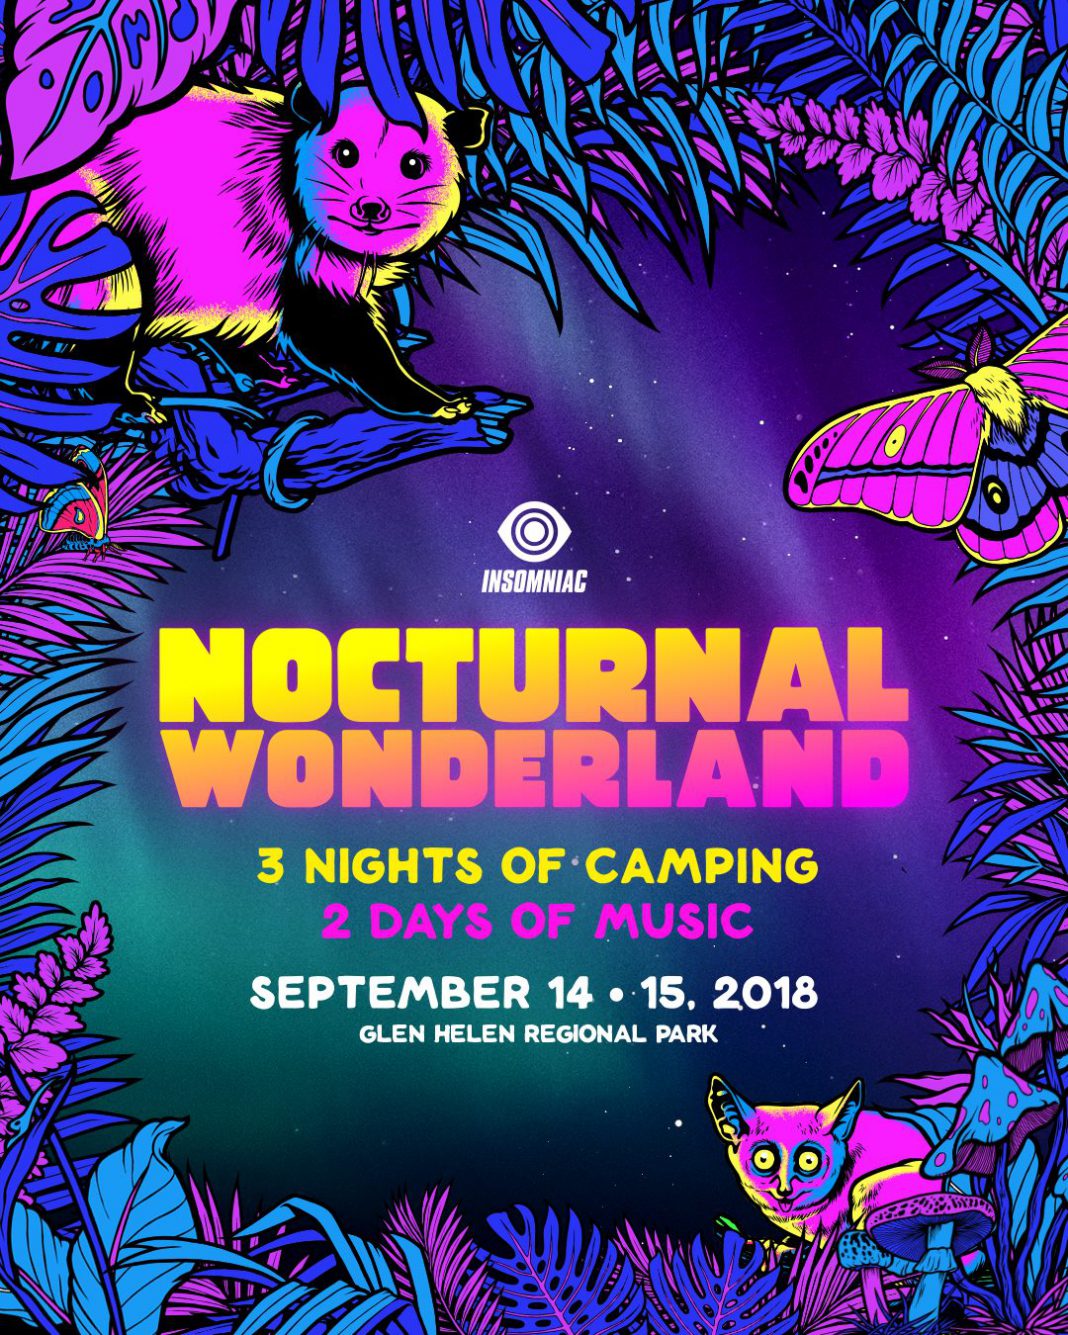 Nocturnal Wonderland 2018 Flyer.